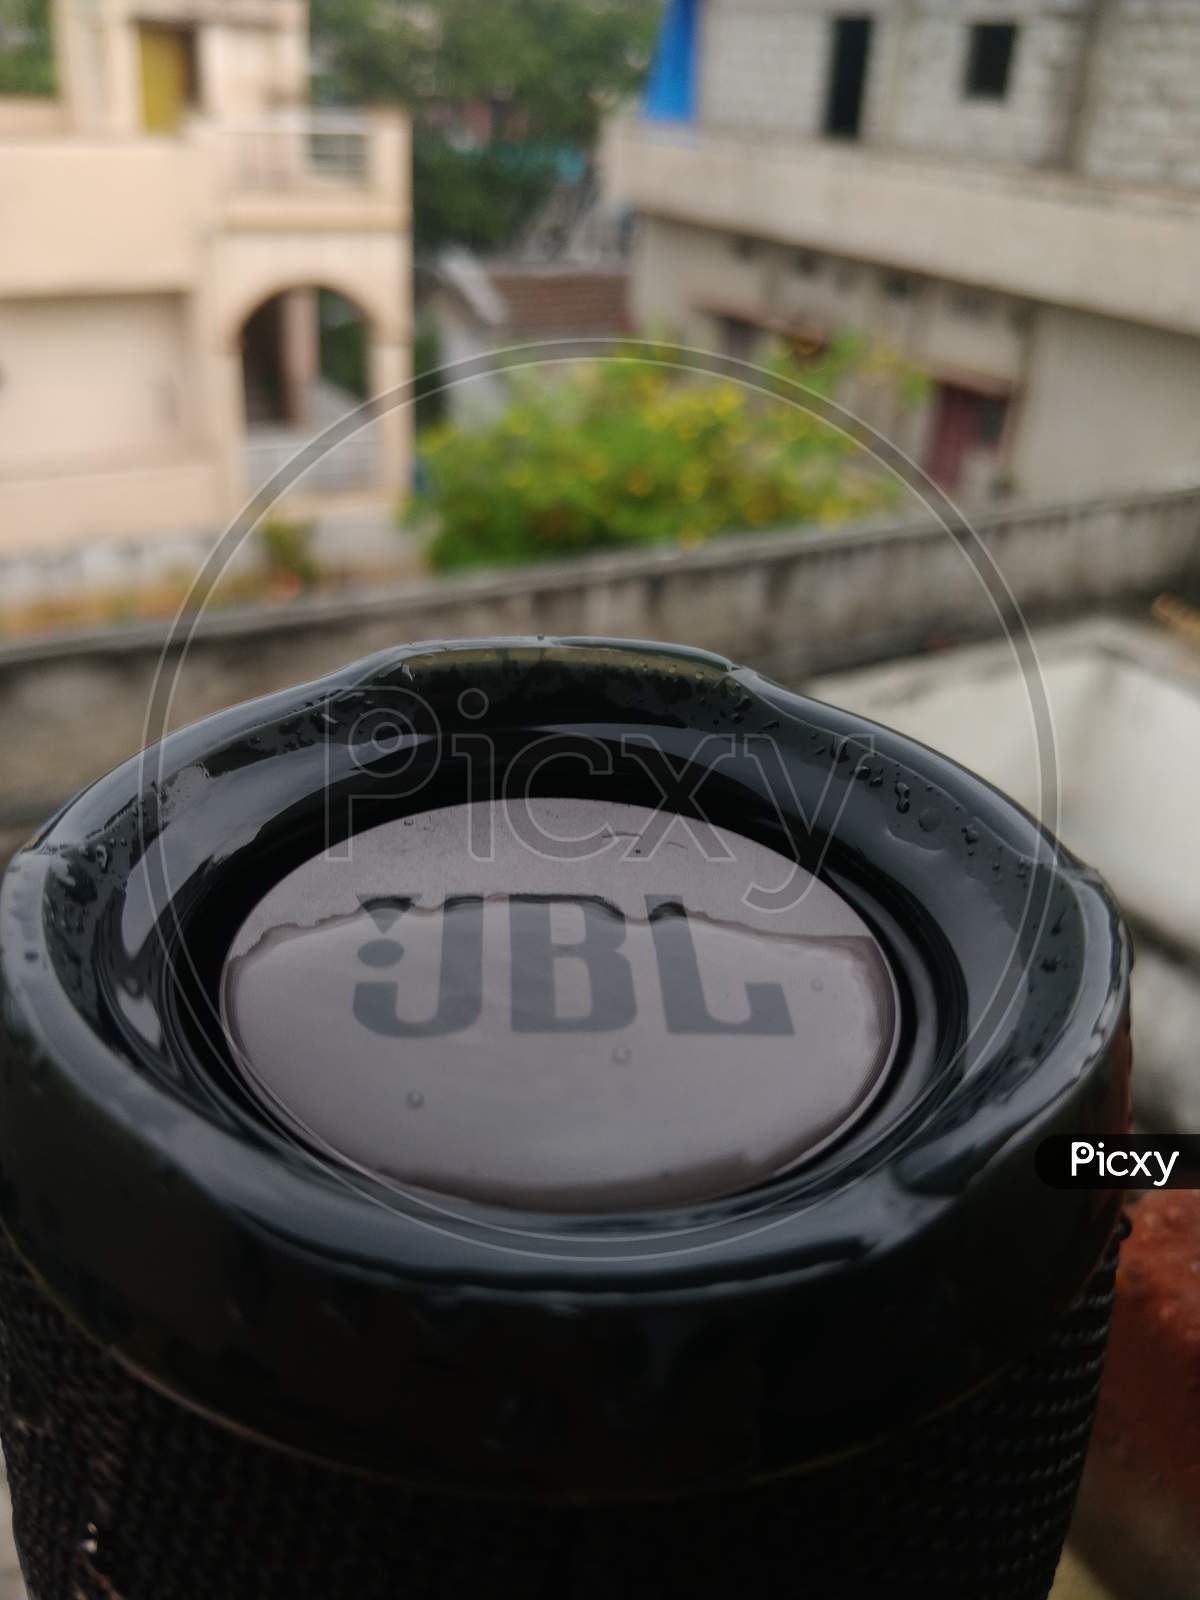 JBL water proof speakers